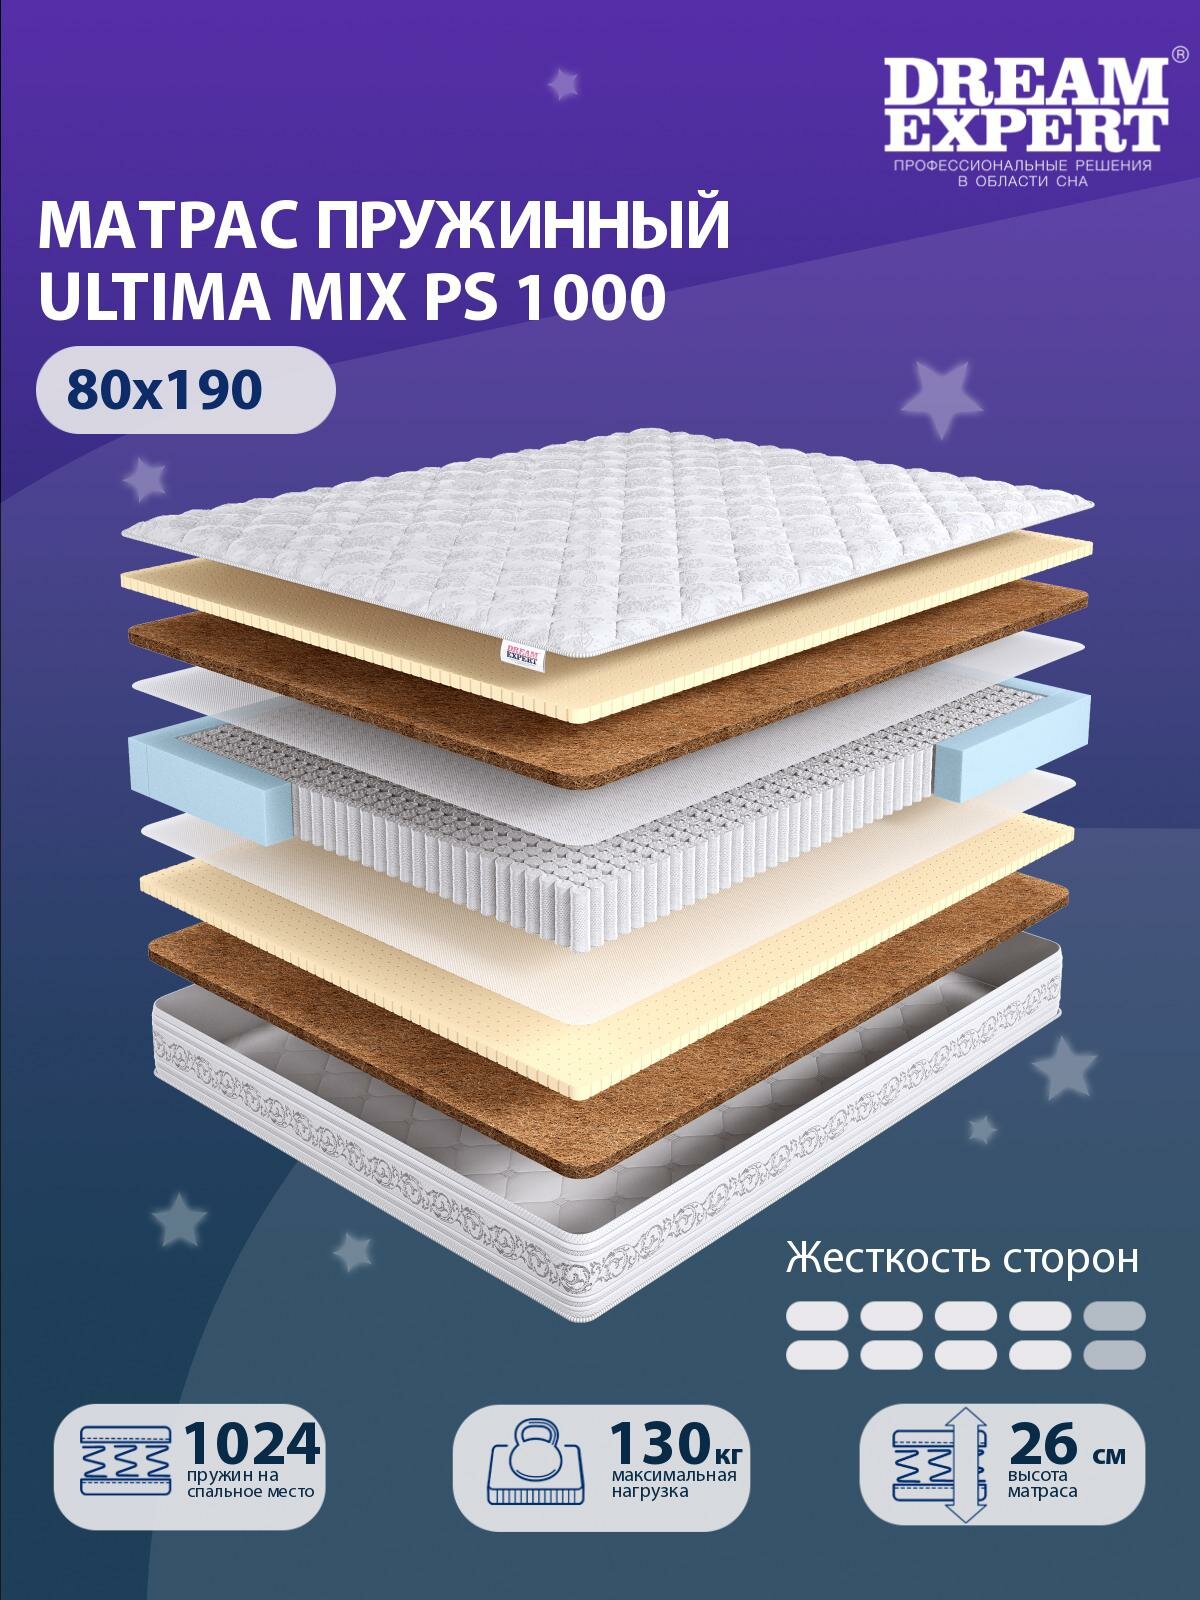 Матрас DreamExpert Ultima MIX PS1000 выше средней жесткости, односпальный, независимый пружинный блок, на кровать 80x190